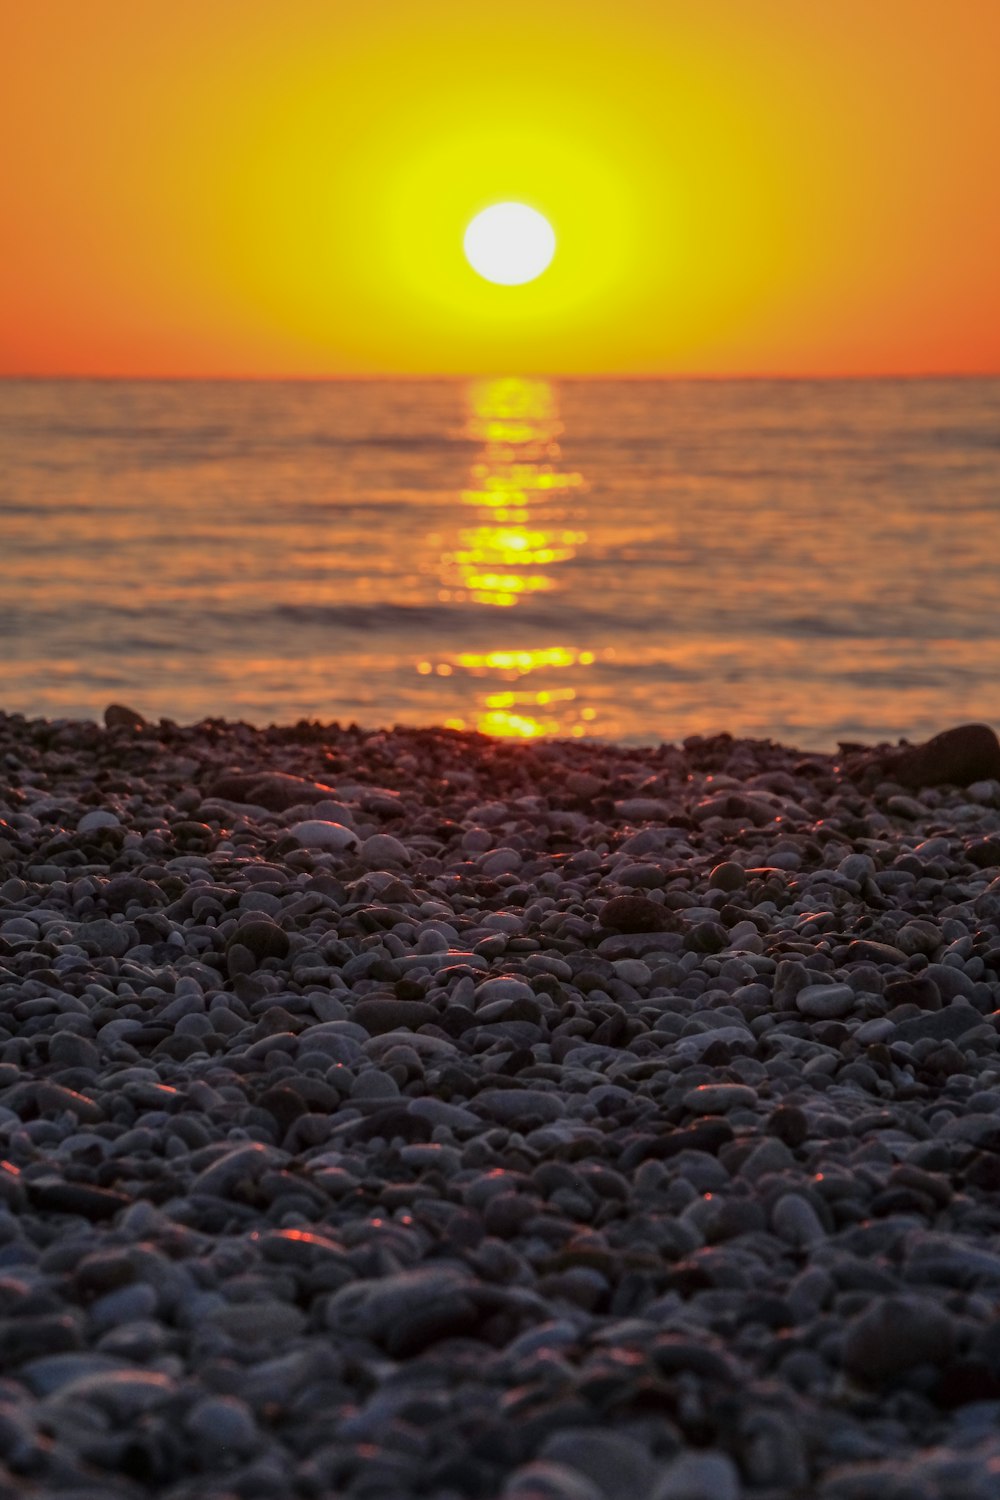 the sun is setting over the ocean on a rocky beach